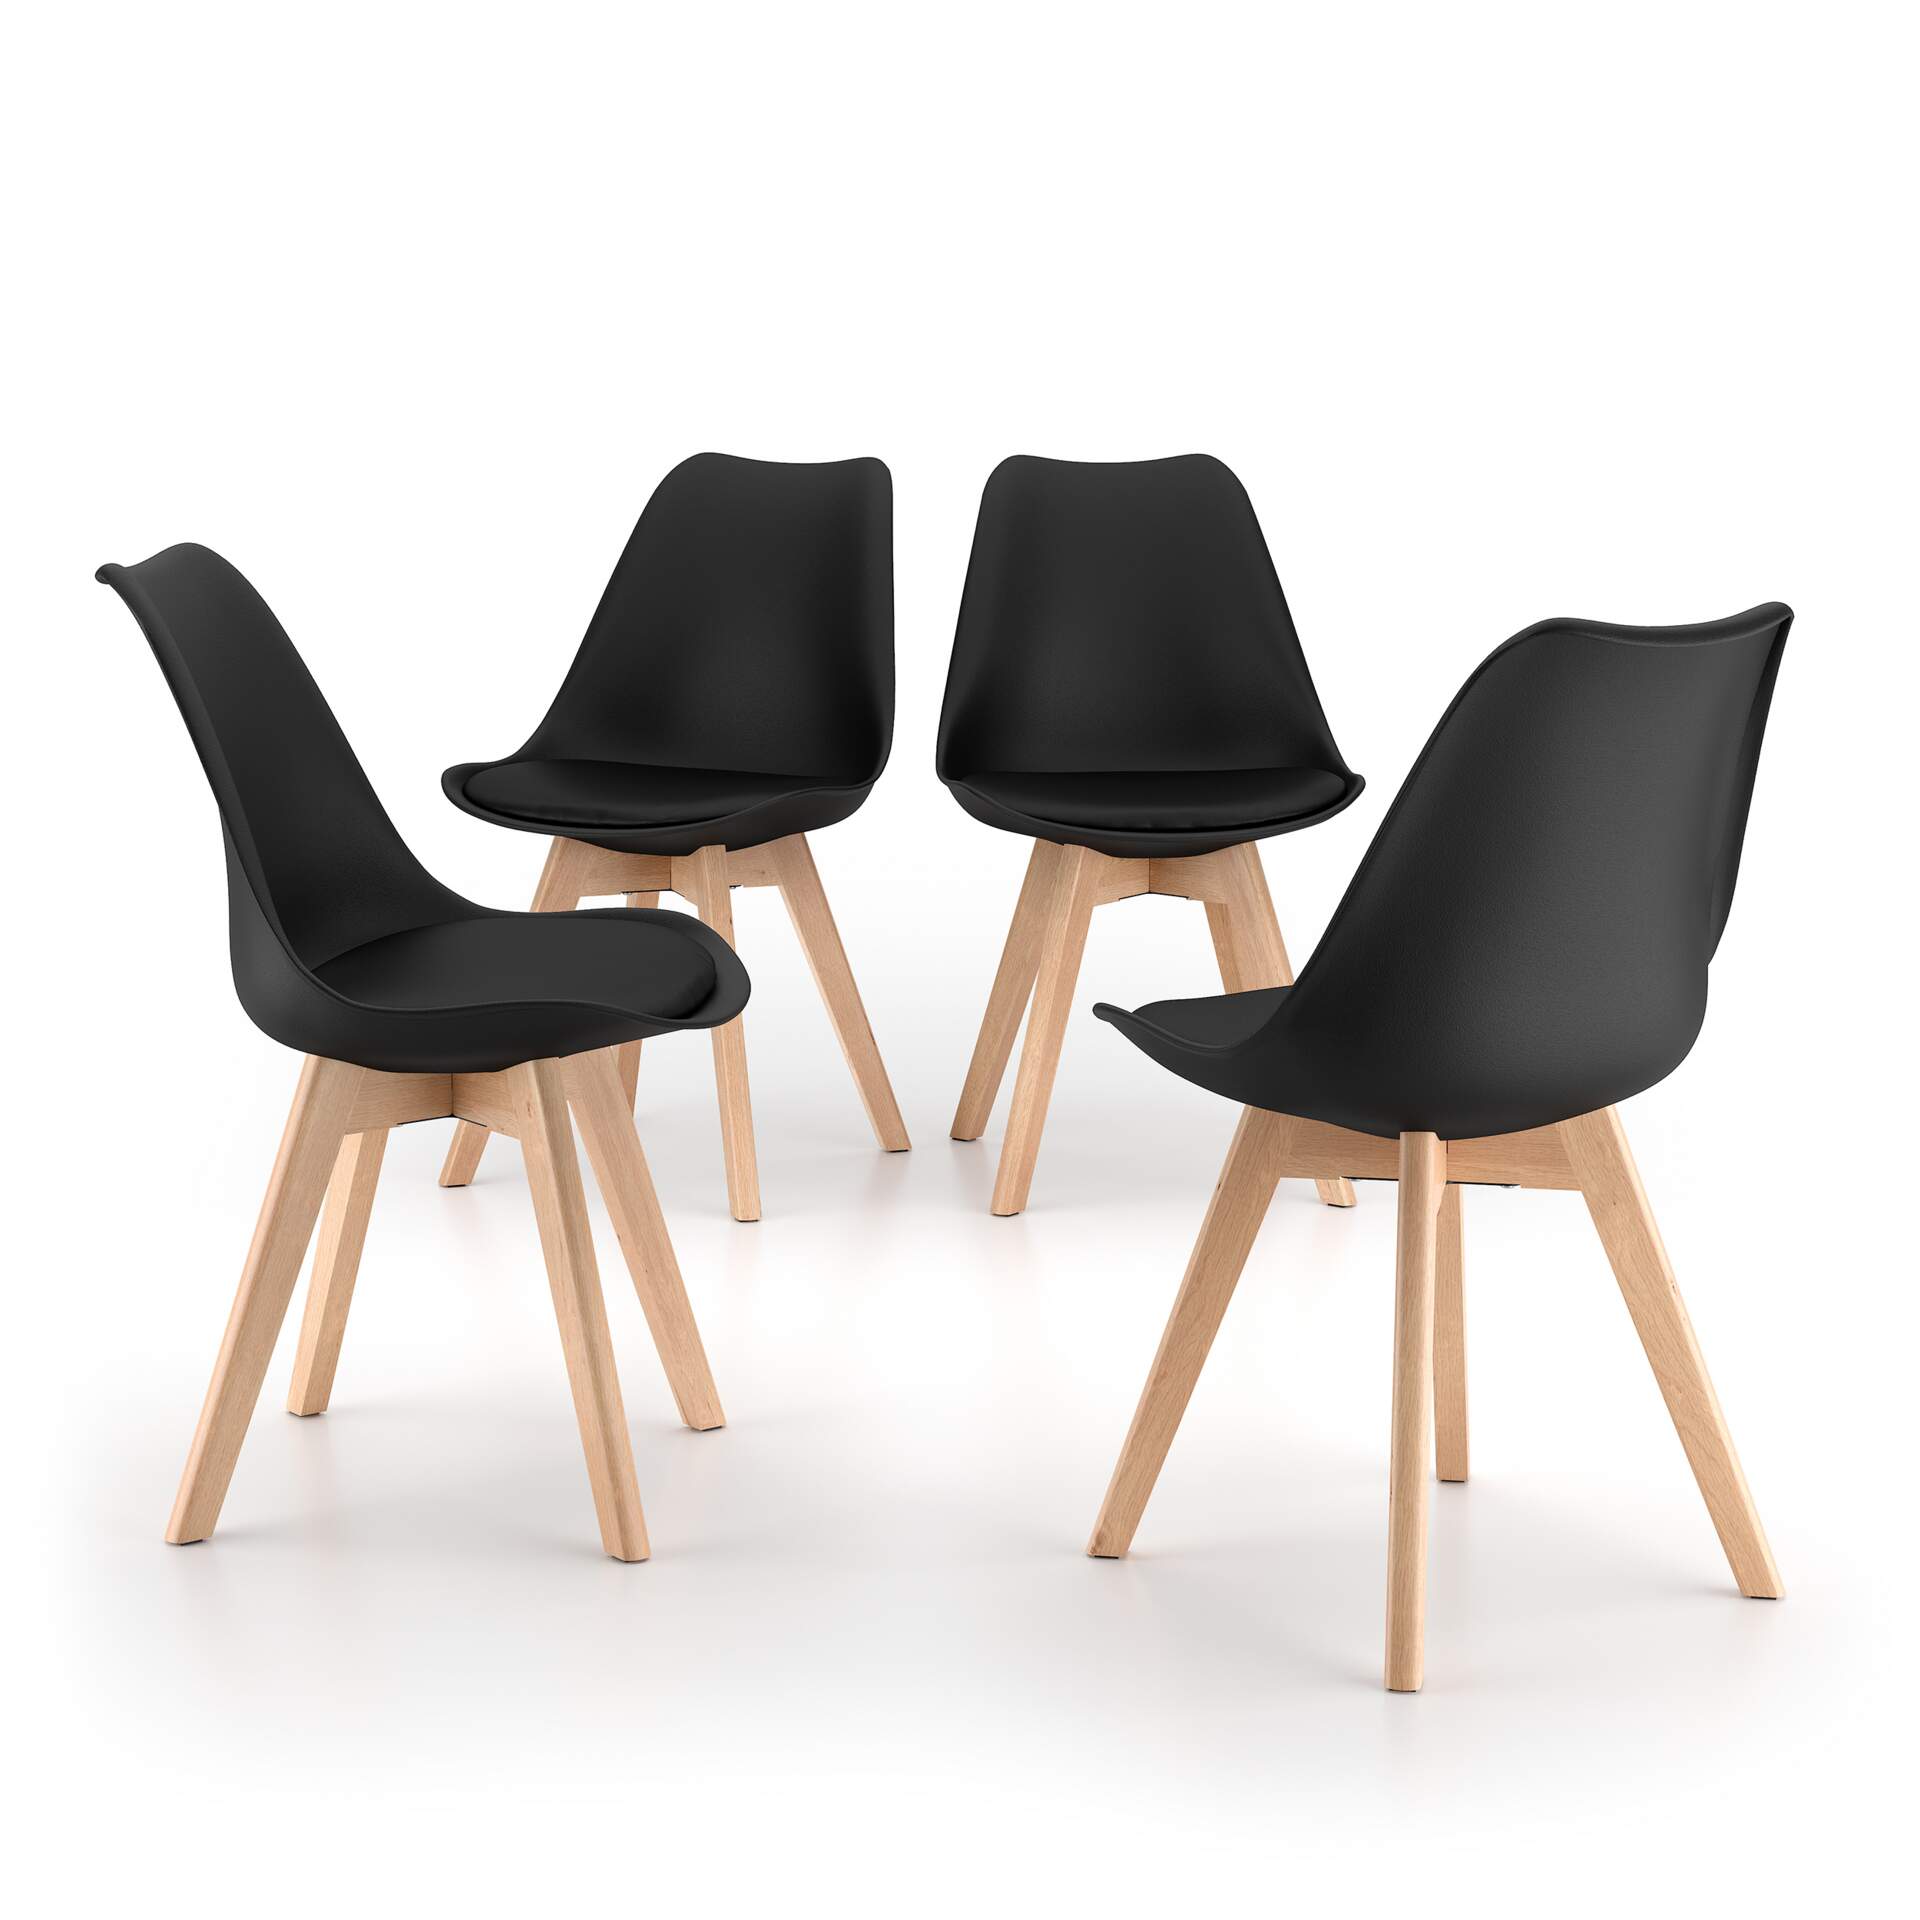 Mobili Fiver Set de 4 sillas en estilo nórdico Greta, negro